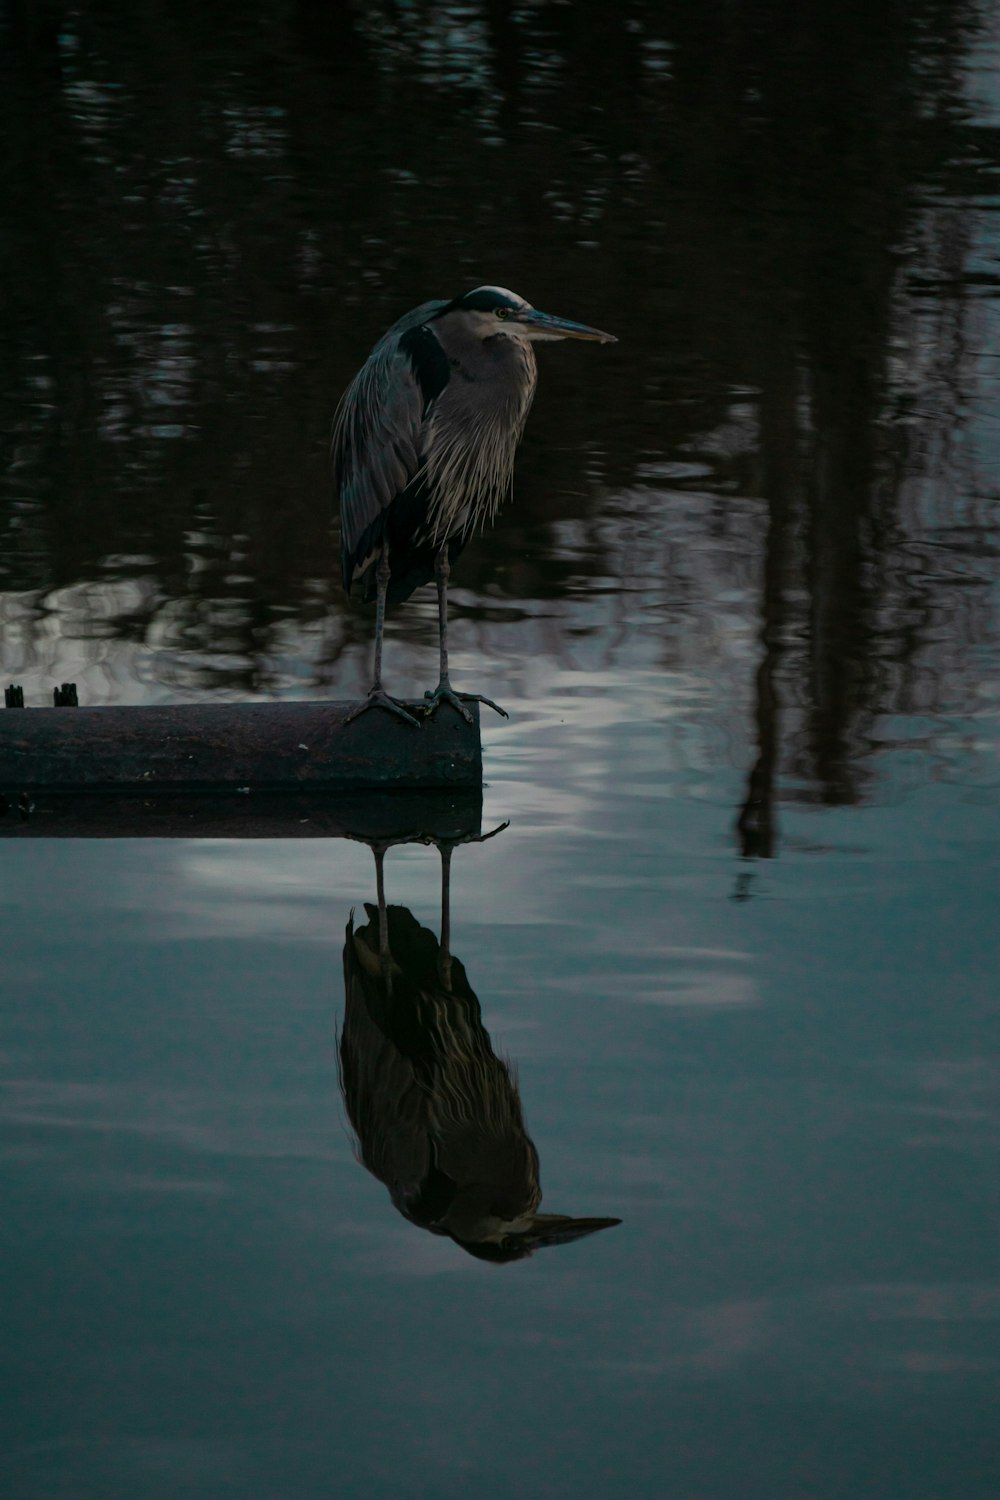 a bird standing on a dock